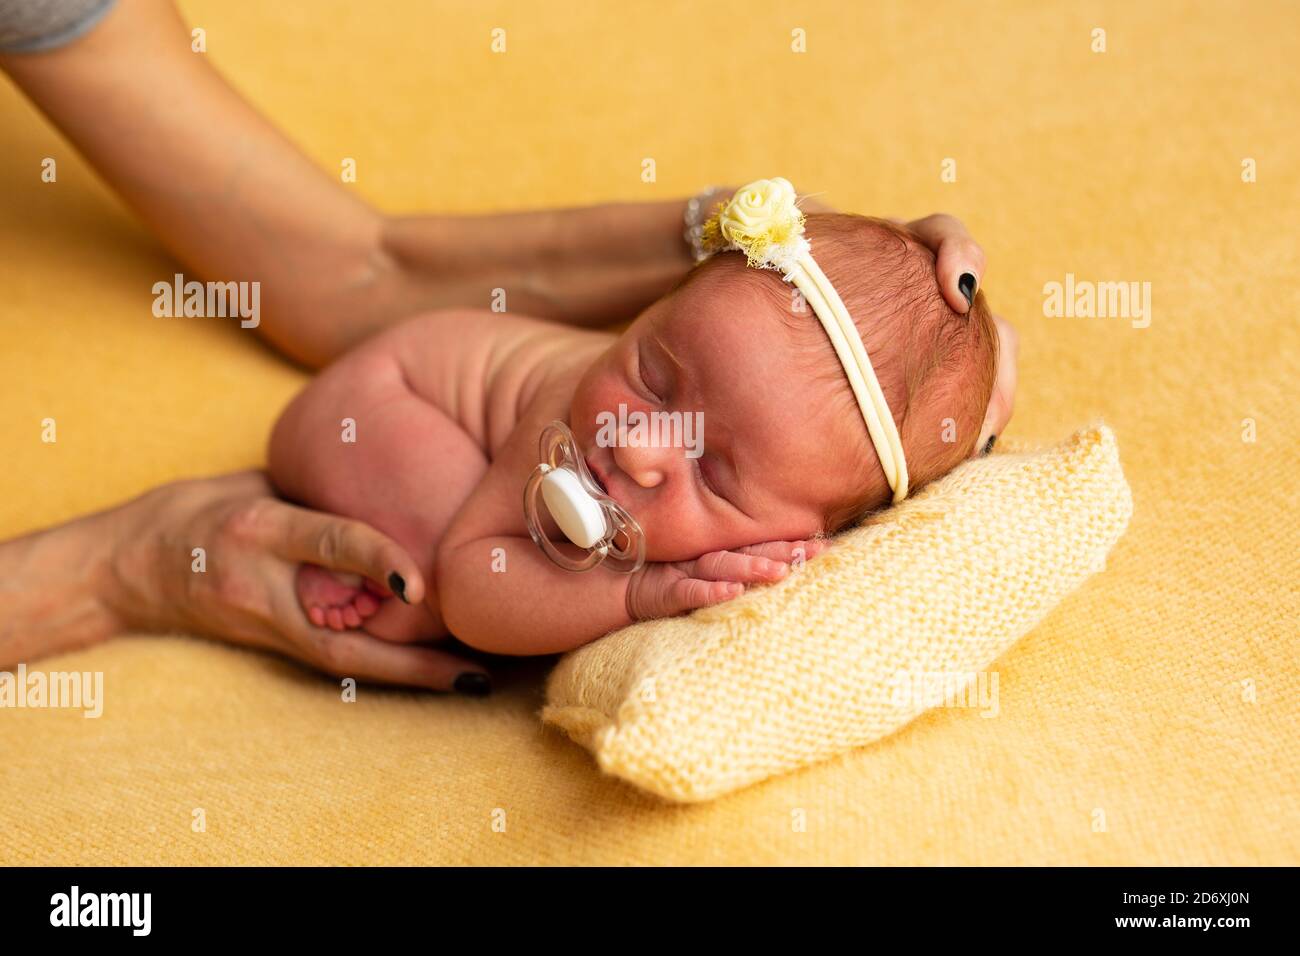 Préparation de photographie de concept de nouveau-né, joli nouveau-né dos avec un bandage sur la tête, avec les mains de photographe Banque D'Images